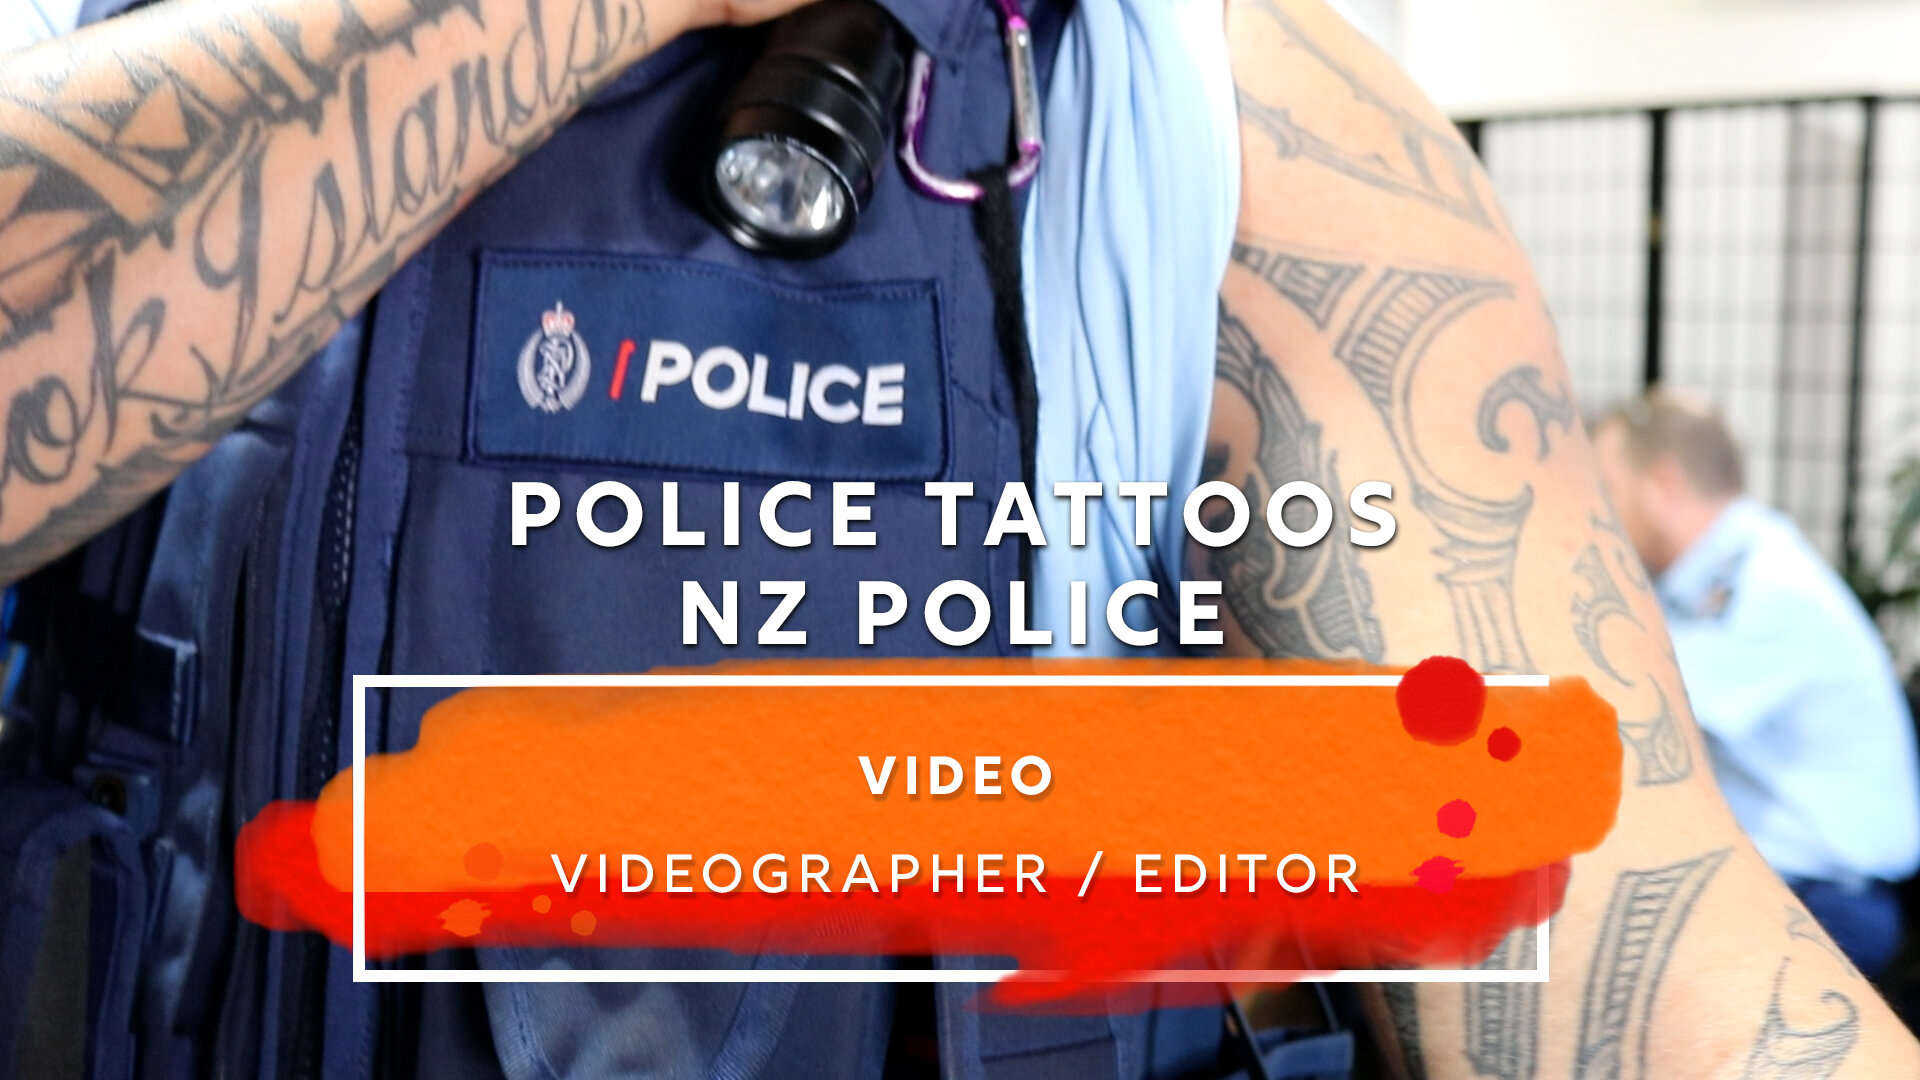 Police tattoos - OP3.jpg